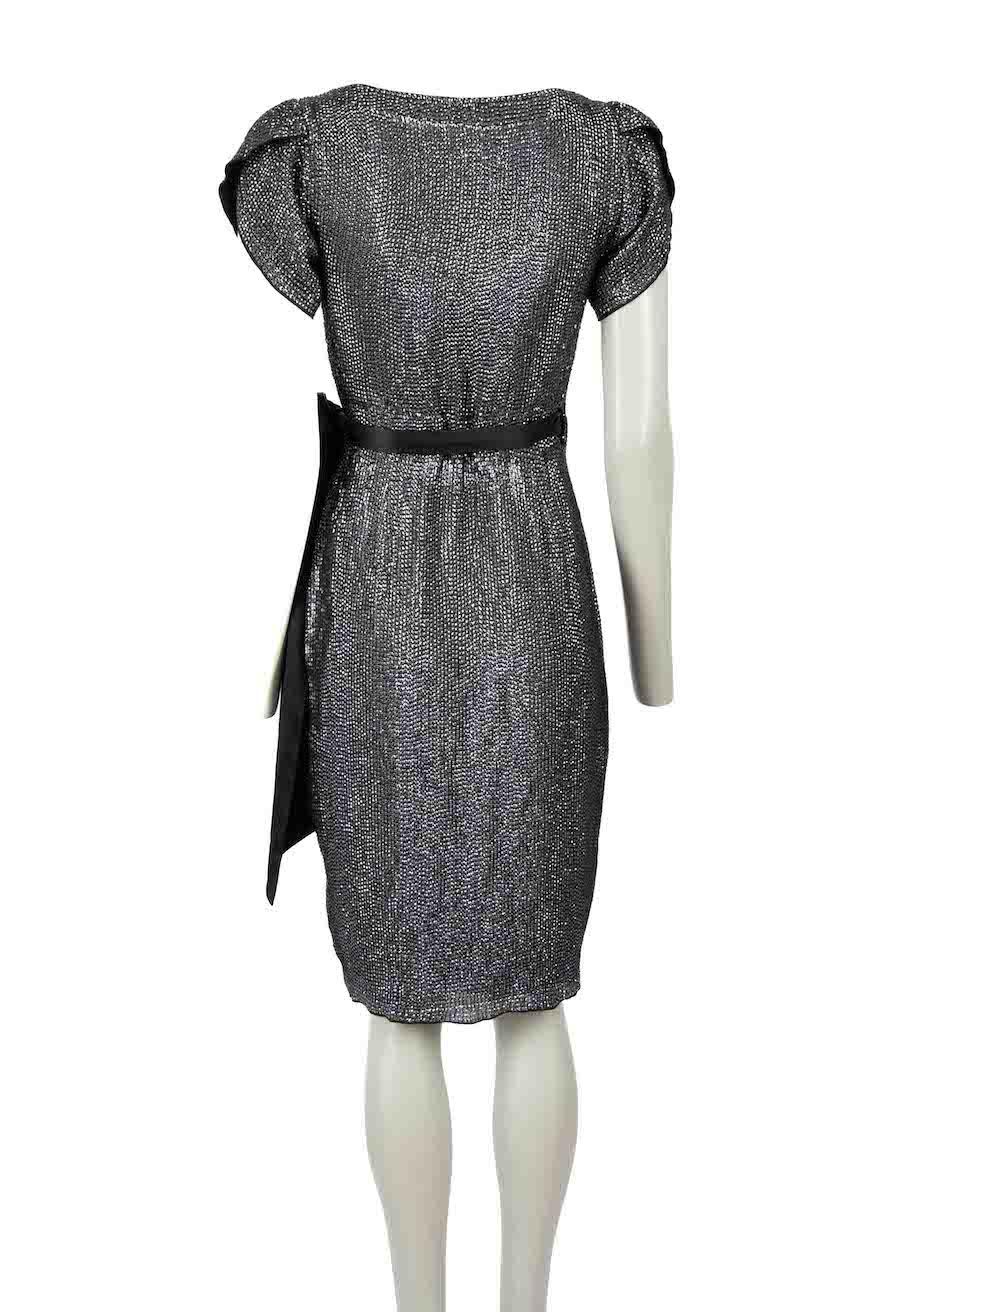 Diane Von Furstenberg Black Silk Wrap Dress Size XS In Excellent Condition For Sale In London, GB